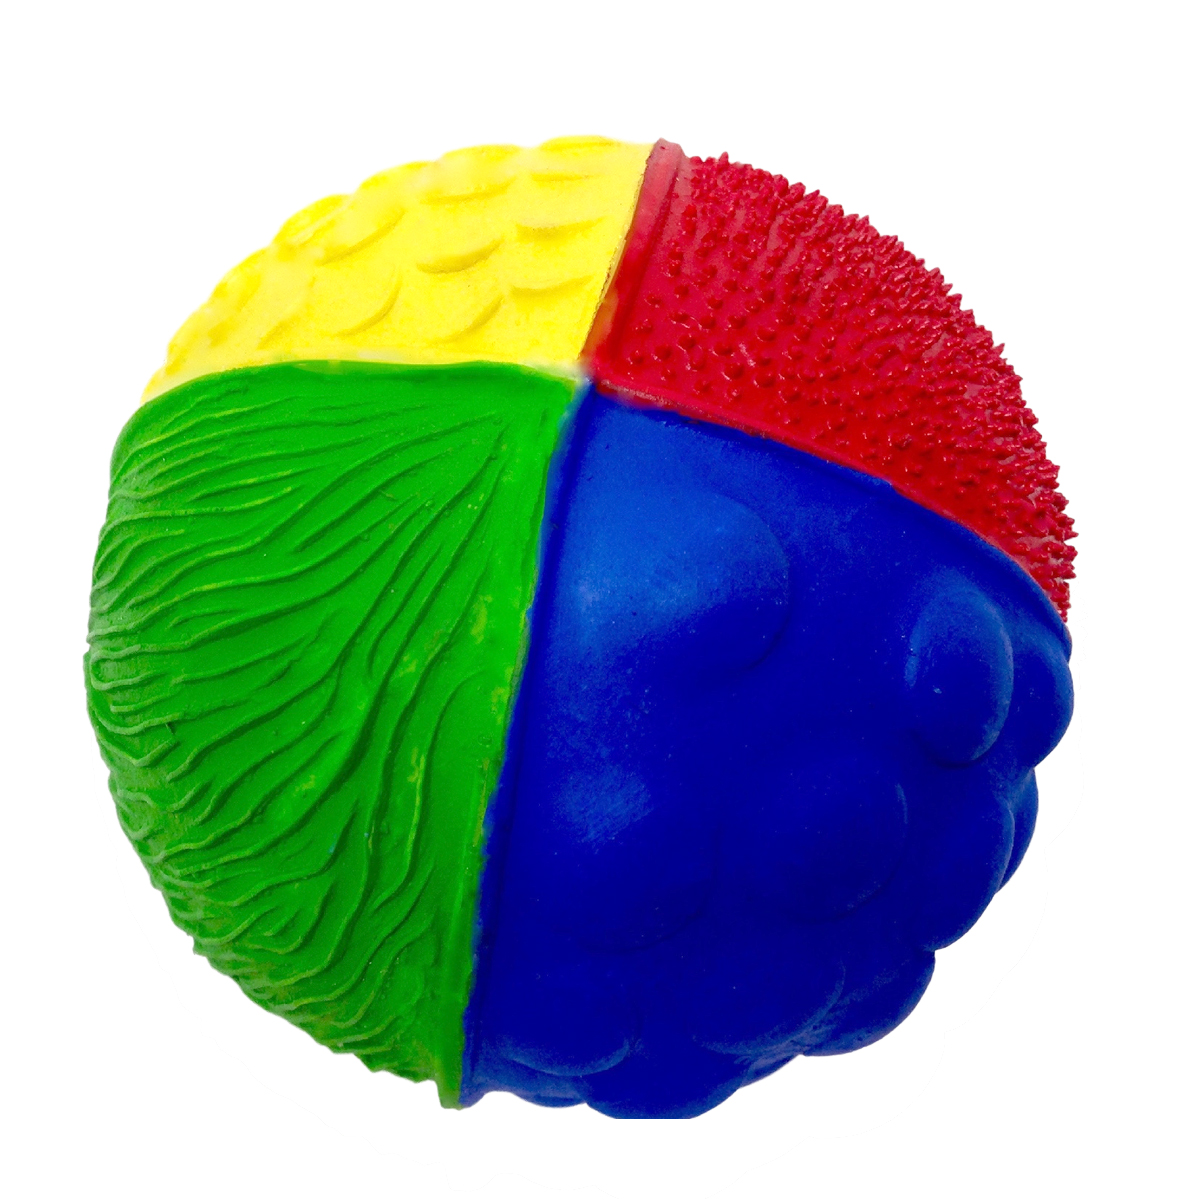 Känselboll av naturgummi glada färger, röd, blå, gul och grön LancoToys